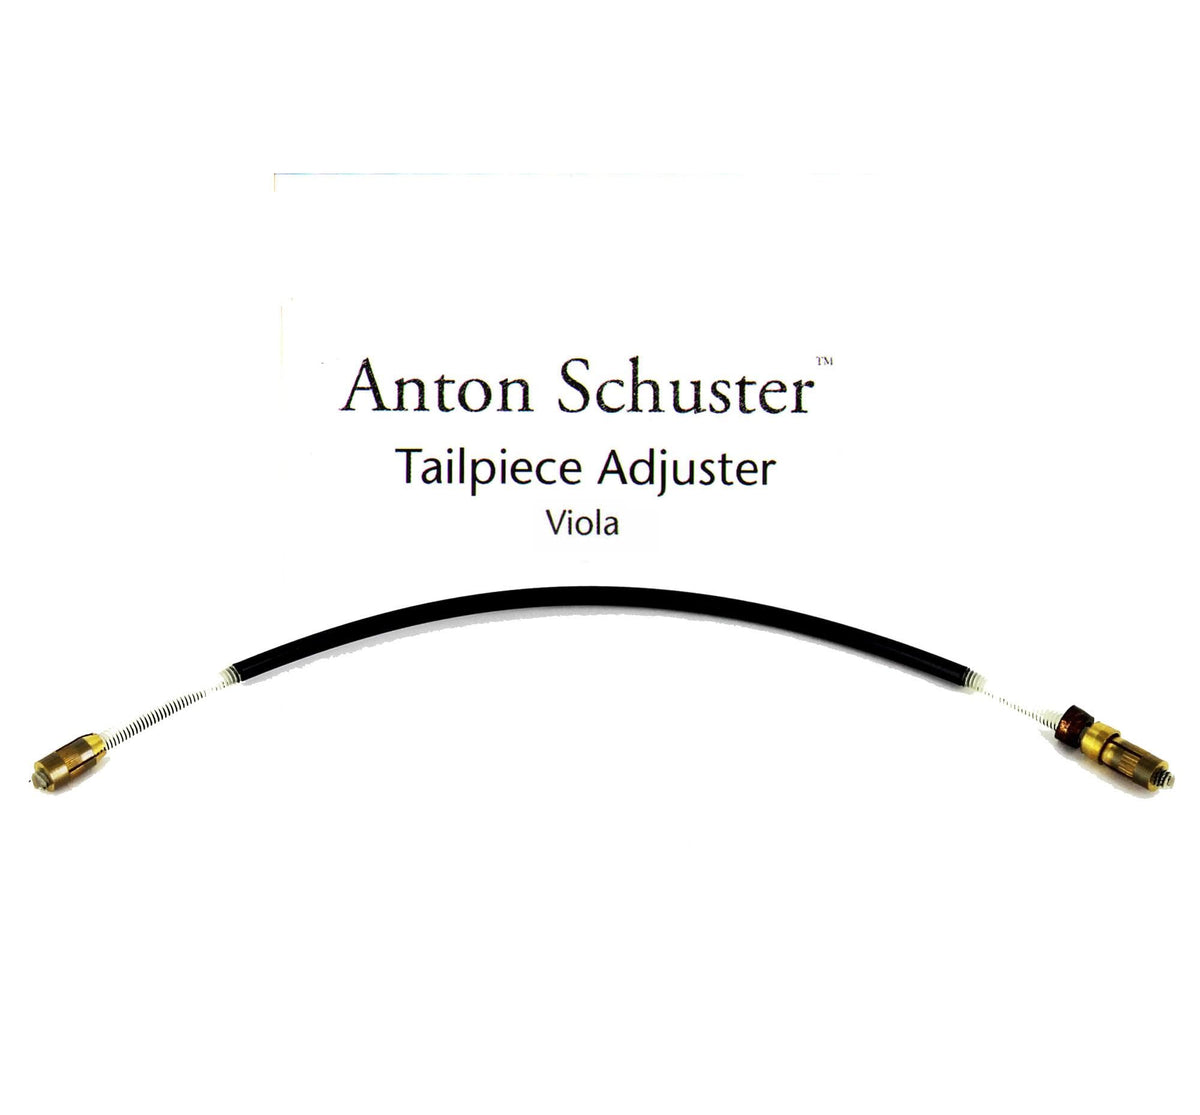 Anton Schuster Viola Tailpiece Adjuster 15-17 Size